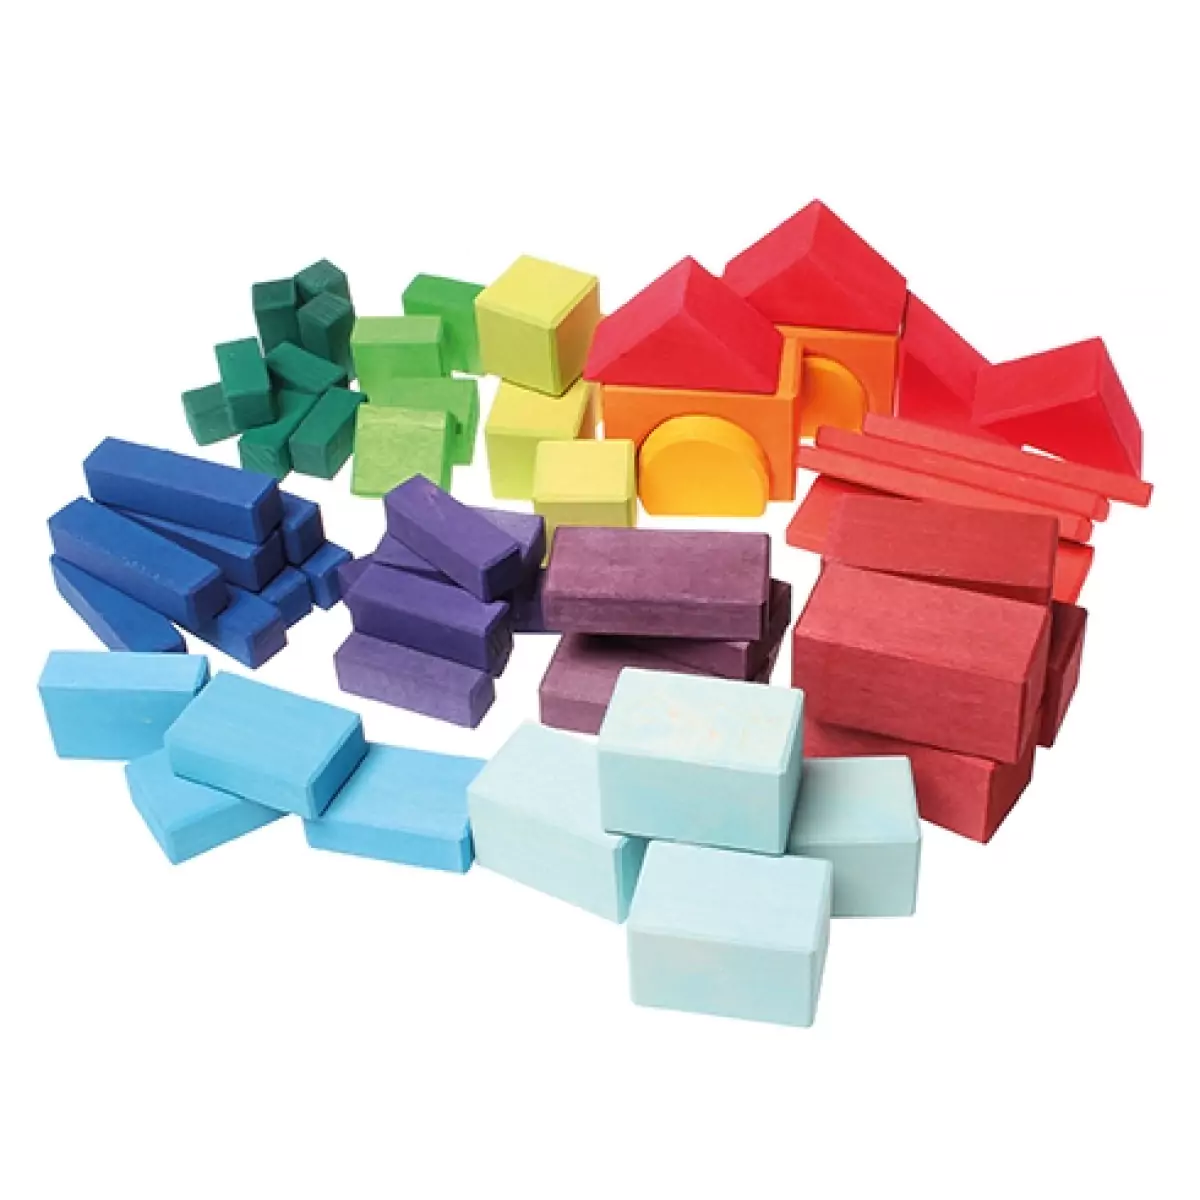 Кубики для мозаики. Кубики Grimm's строительные 10180. Блок кубик. Строительные цвета. Geo Blocks кубики.